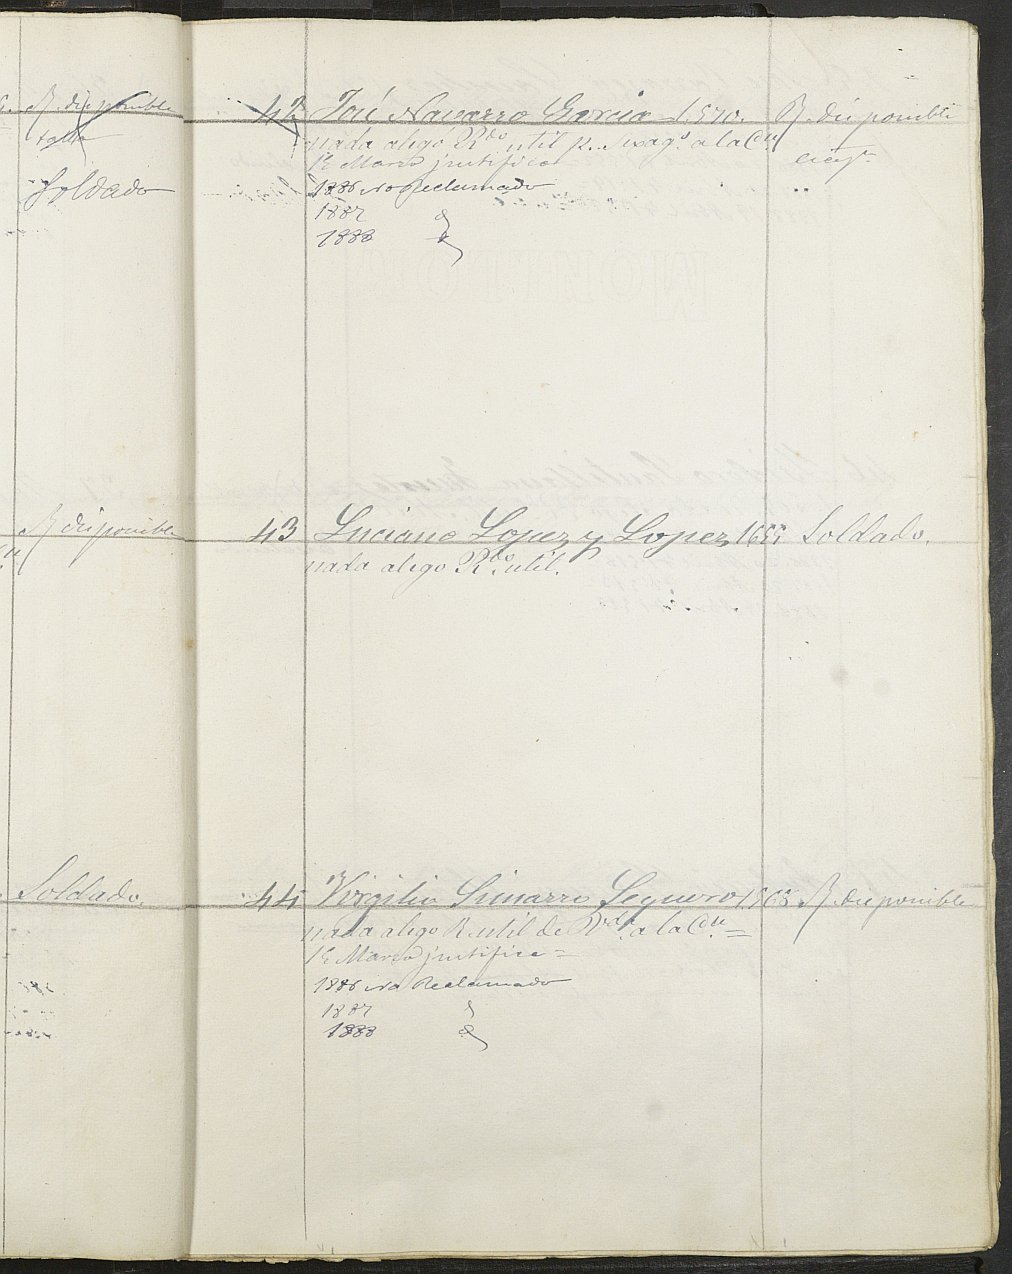 Relación de individuos declarados soldados e ingresados en Caja del Ayuntamiento de Caravaca de 1885.